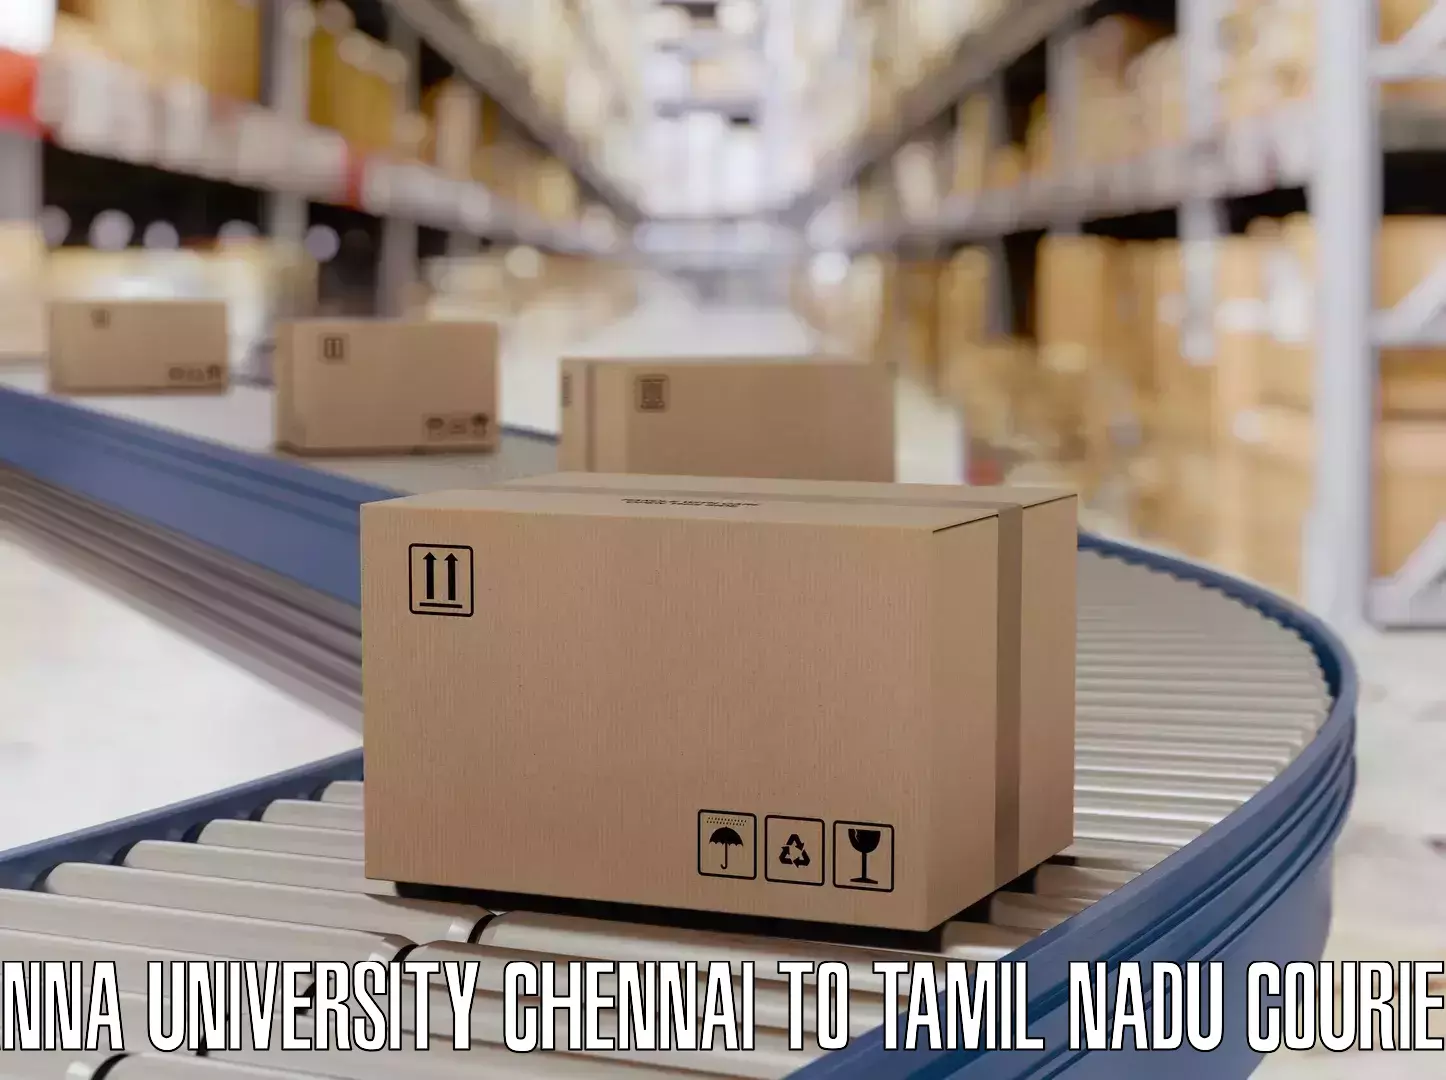 Reliable luggage courier Anna University Chennai to Tuticorin Port